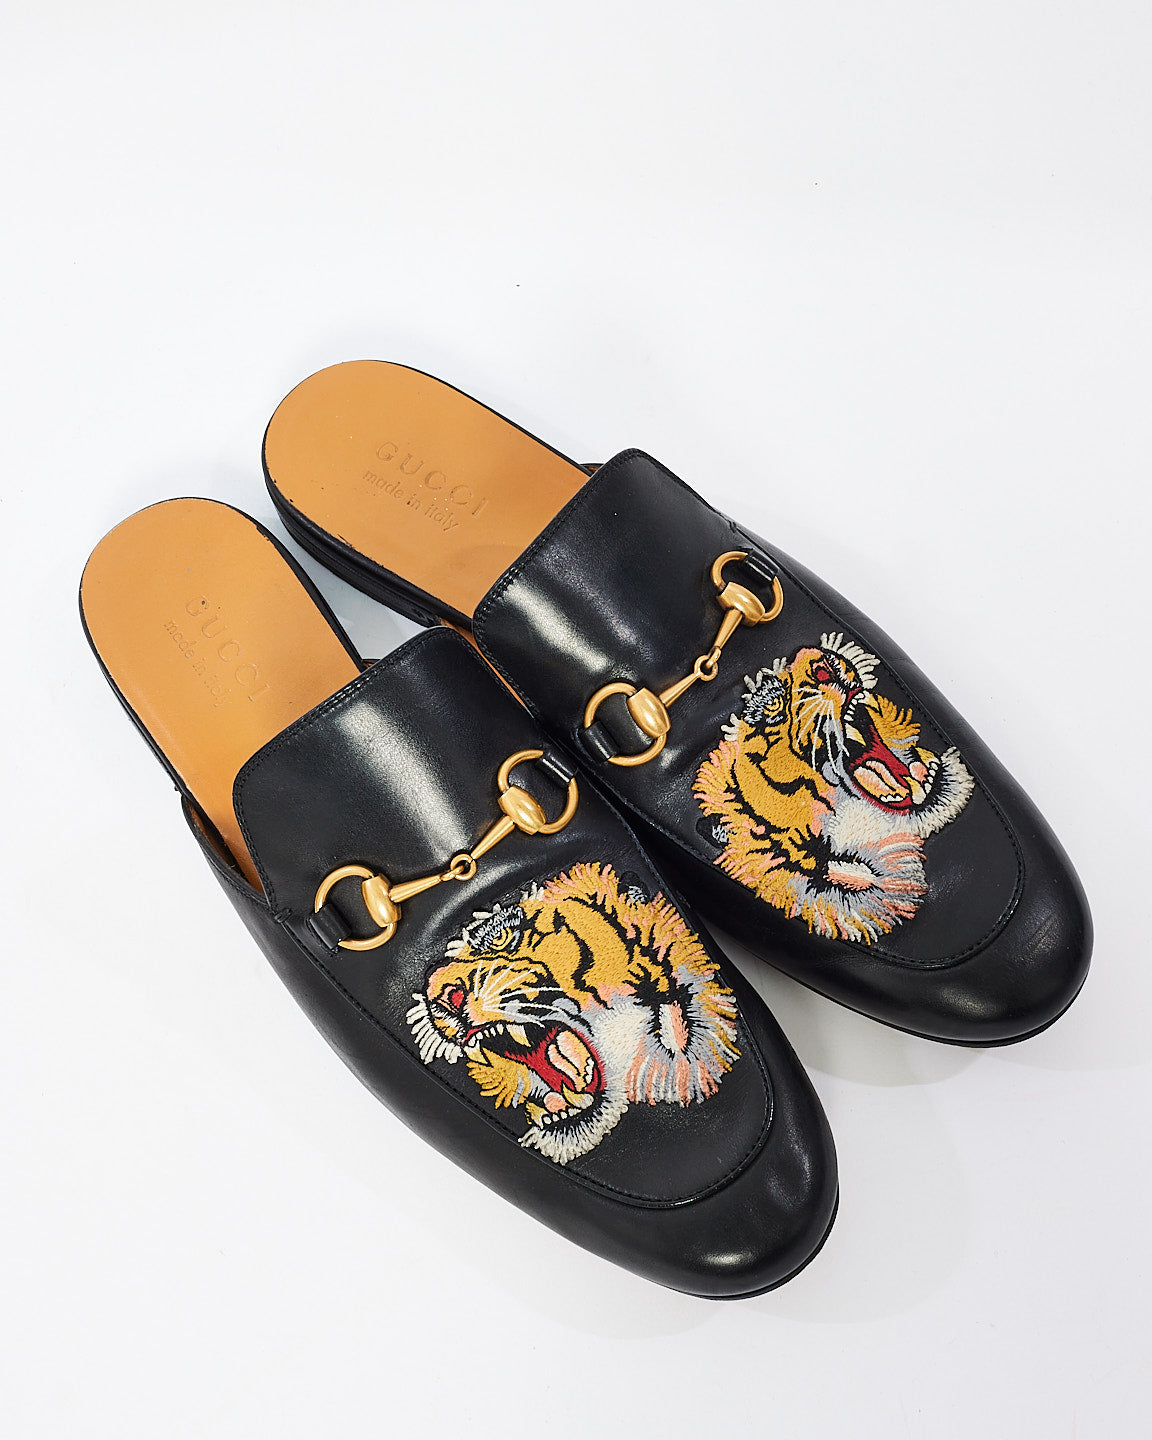 Gucci Black Leather Tiger Princeton Open Back Loafer Slippers - 10 MEN